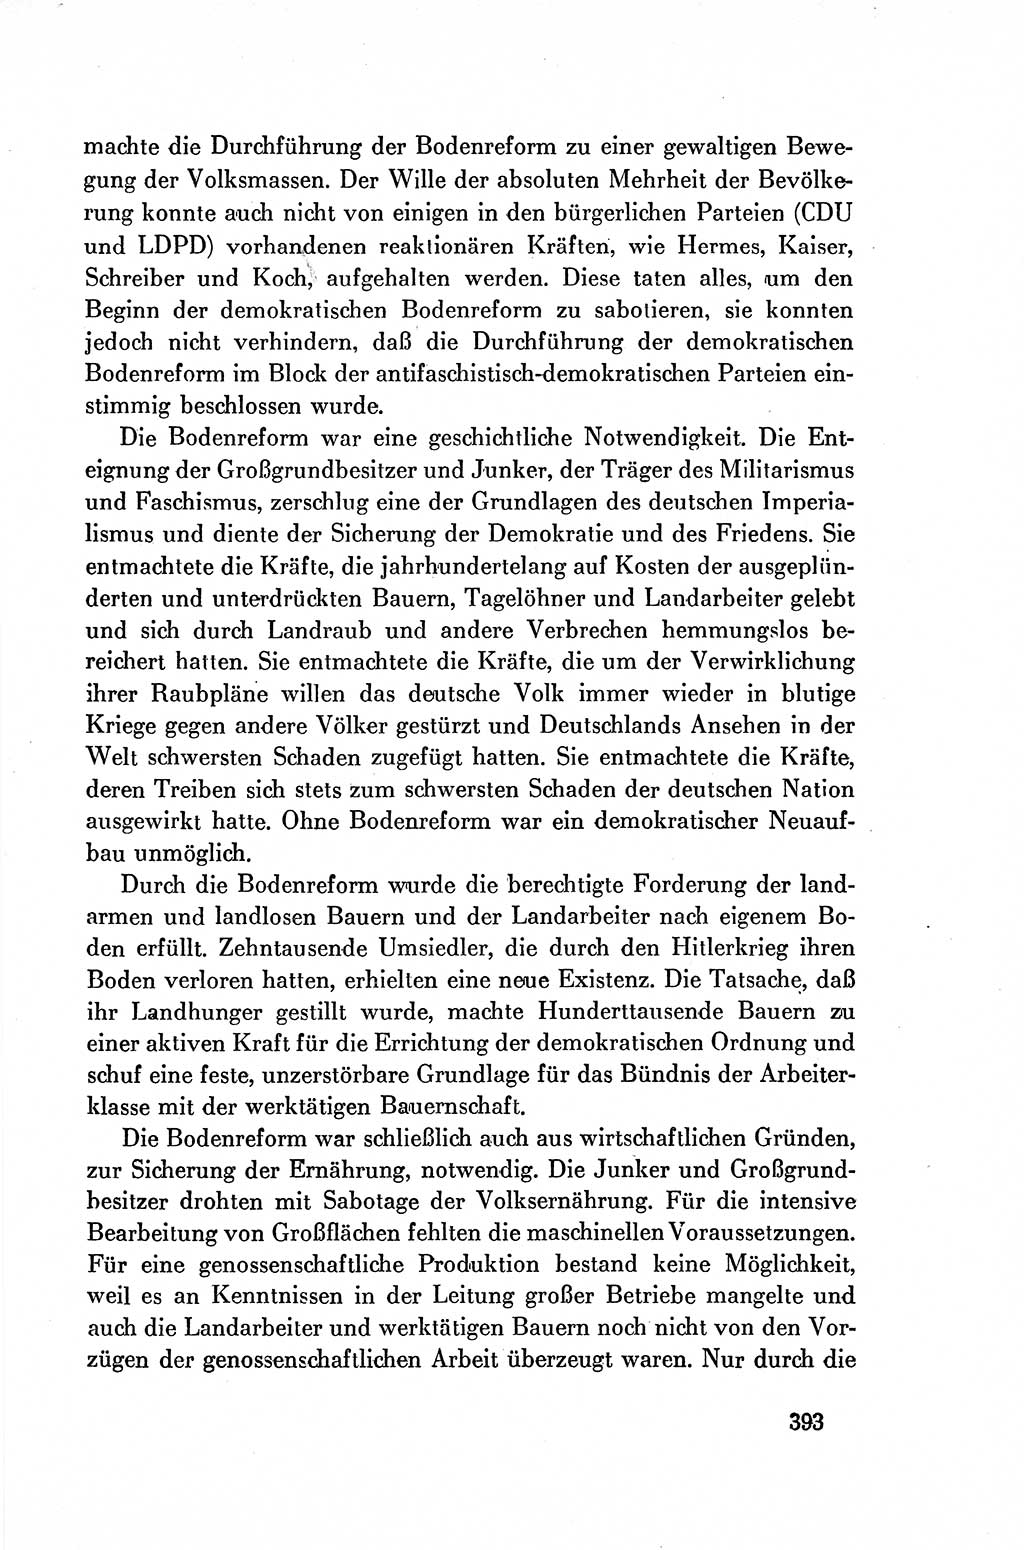 Dokumente der Sozialistischen Einheitspartei Deutschlands (SED) [Deutsche Demokratische Republik (DDR)] 1954-1955, Seite 393 (Dok. SED DDR 1954-1955, S. 393)